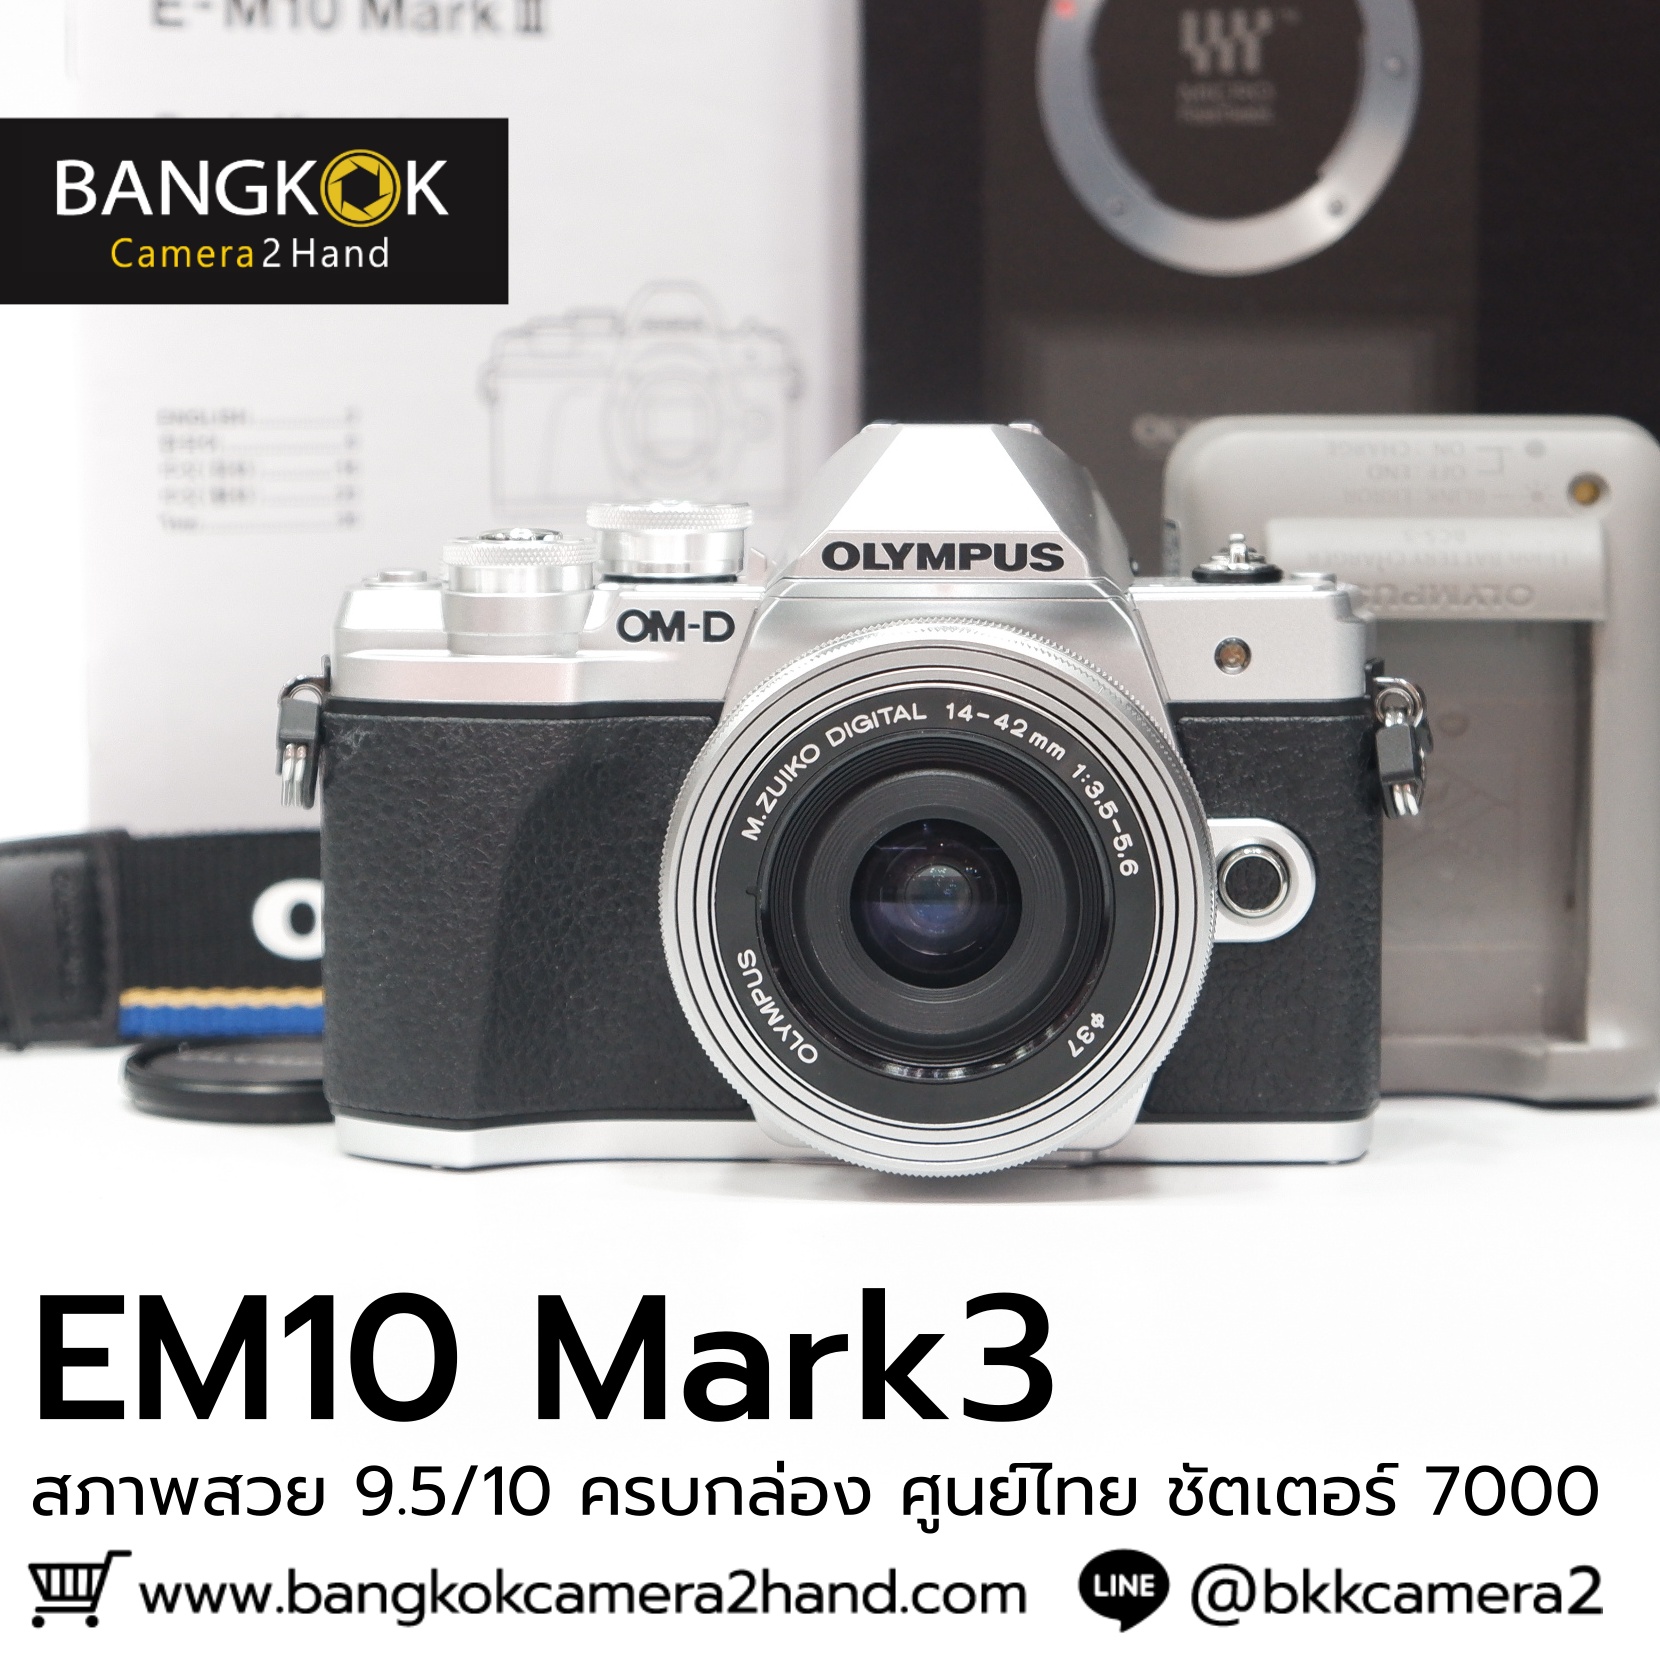 EM10 mark III ครบกล่อง ศูนย์ไทย